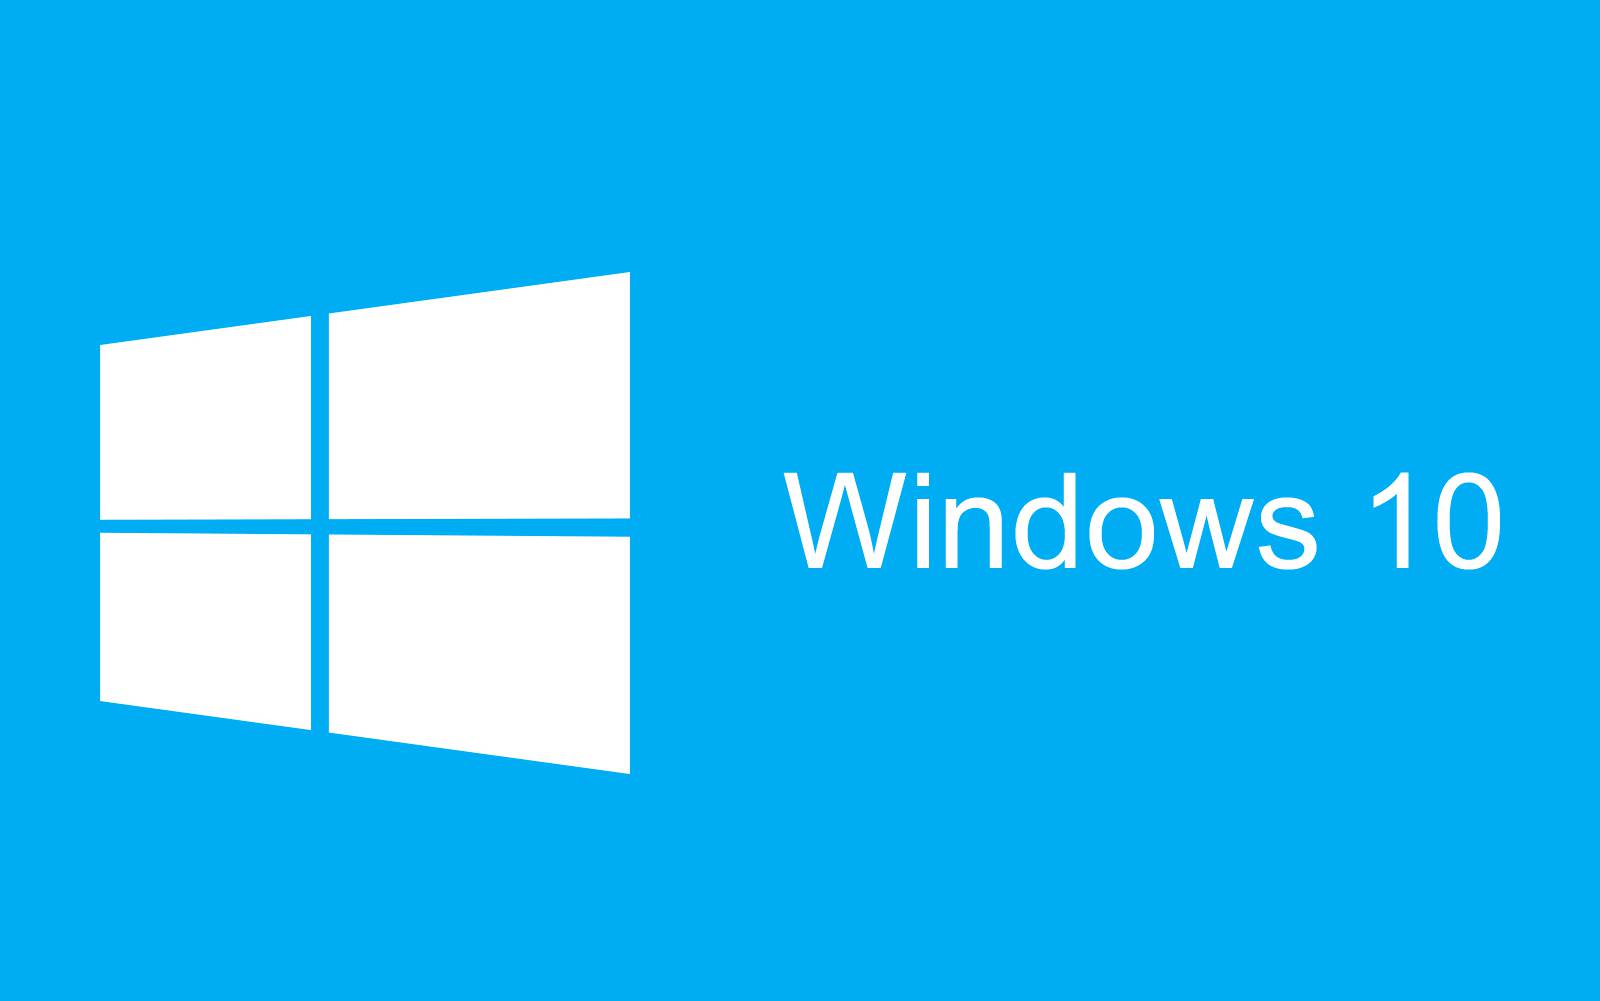 Functia Windows 10 la care NIMENI nu s-a GANDIT pana Acum